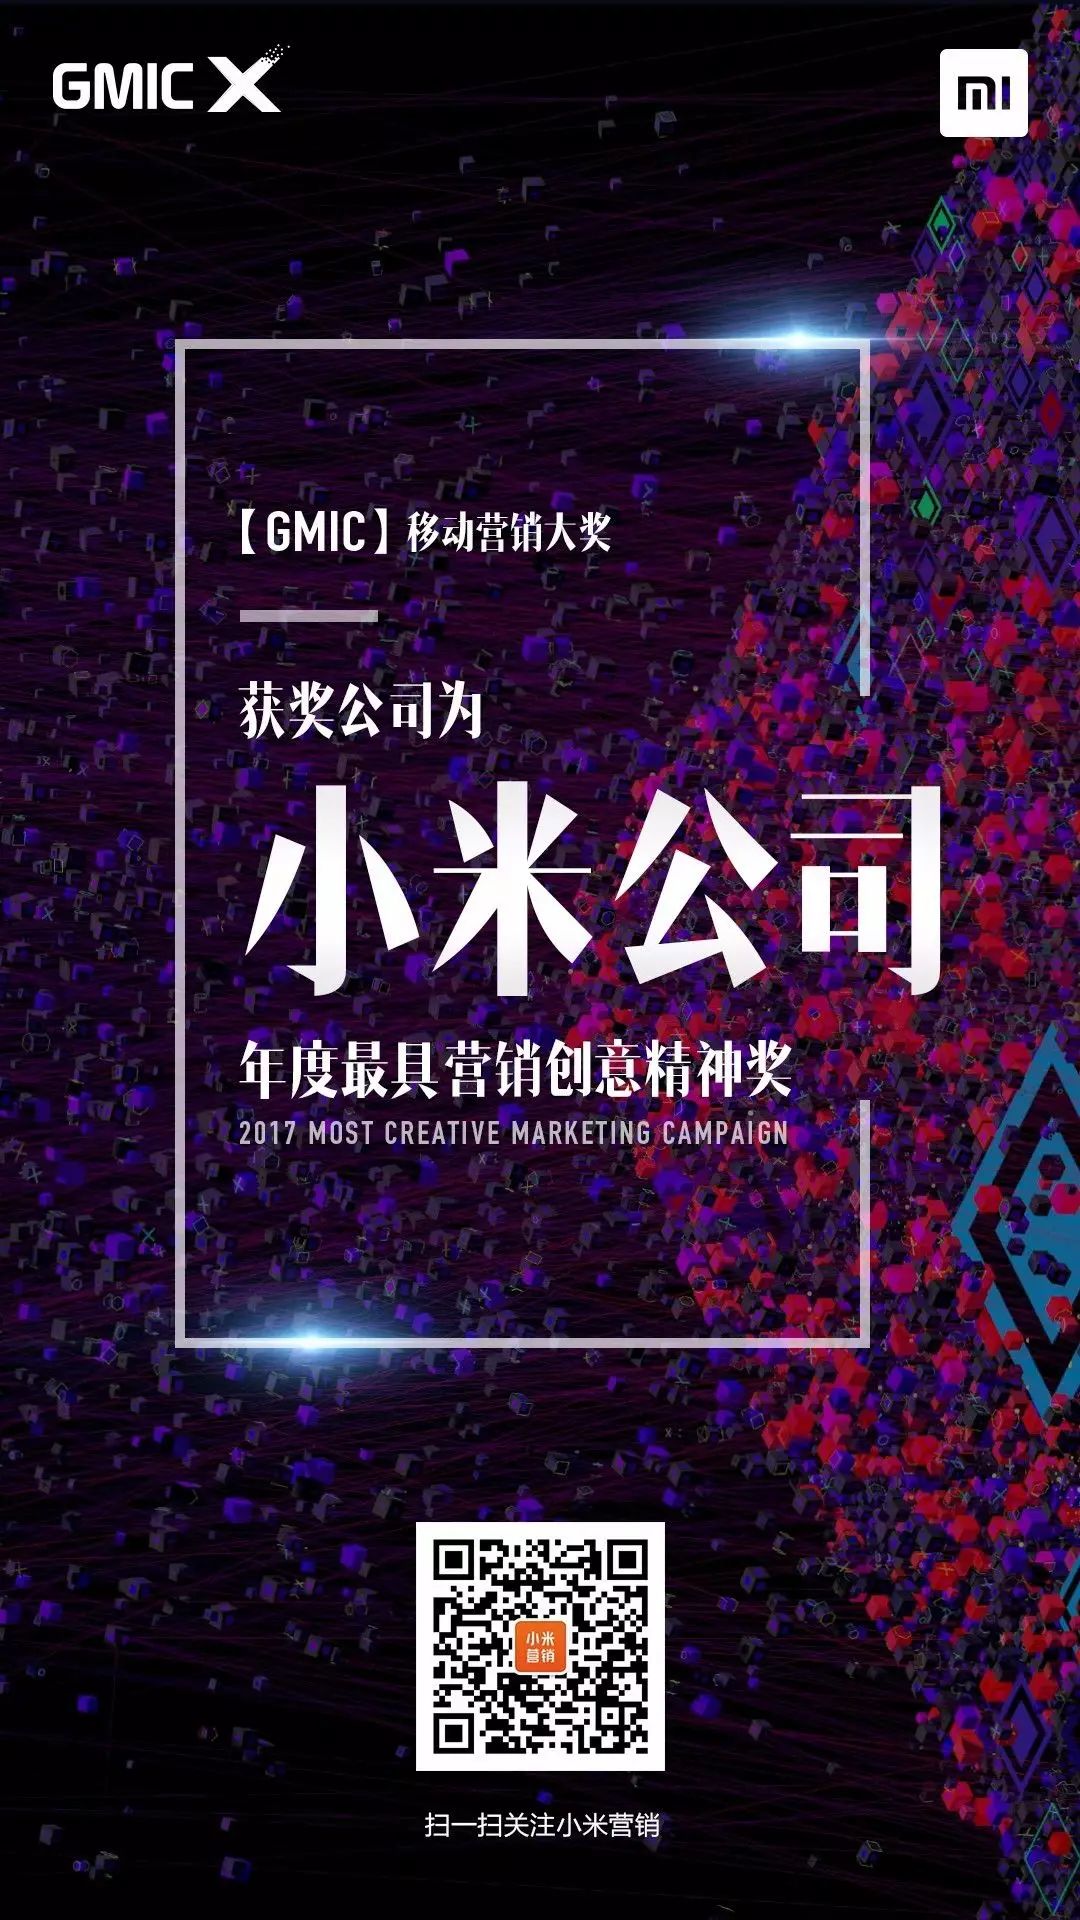 Discuz论坛采集微信文章小米斩获“GMIC年度最具营销创意精神奖”！